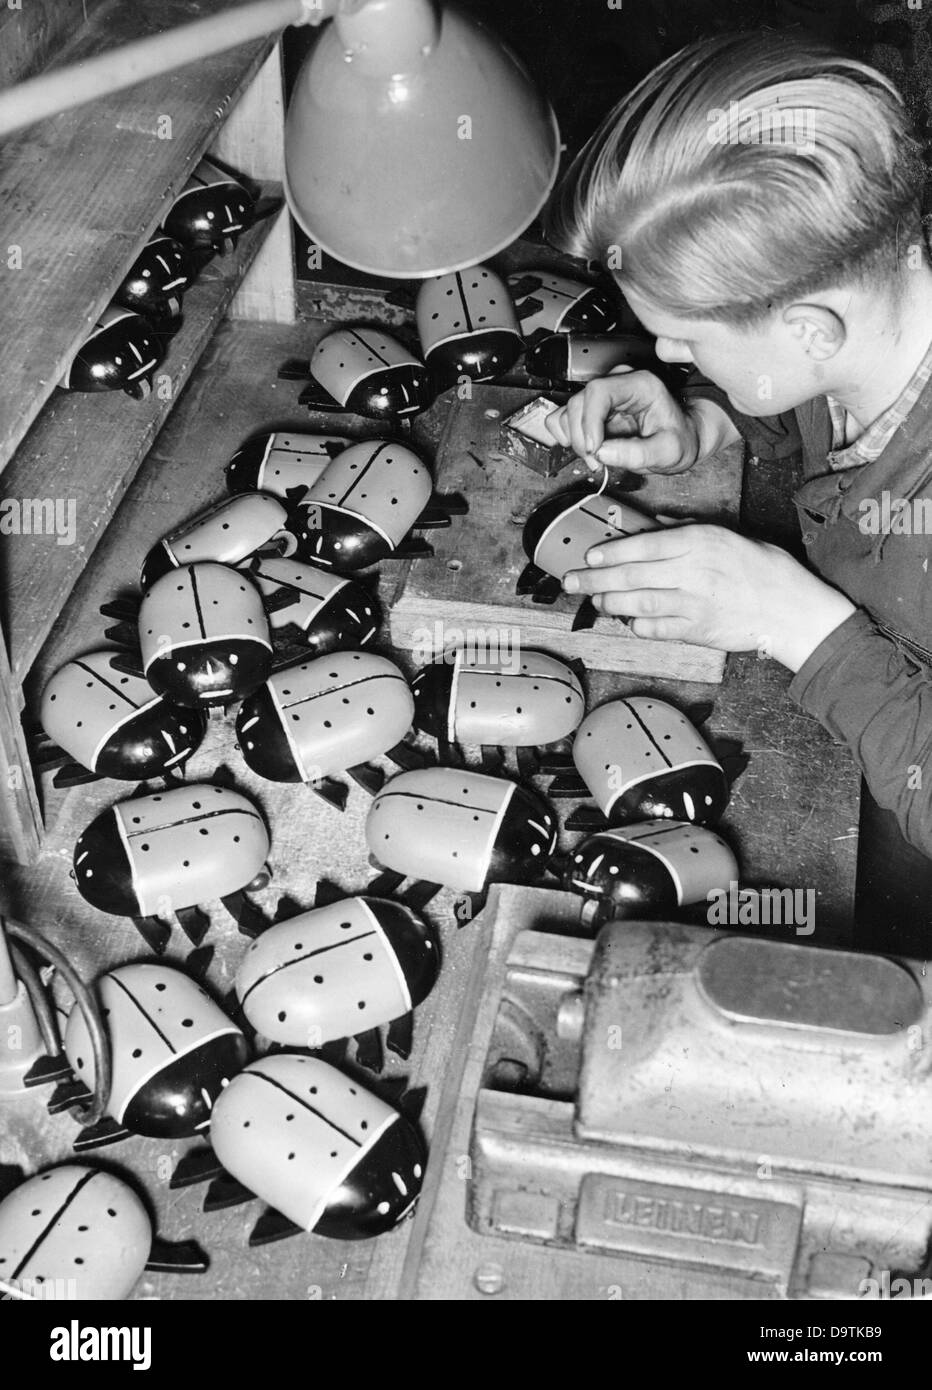 I ragazzi della Hitler Youth stanno producendo giocattoli per Natale, nel novembre 1942, in una fabbrica di opere di armamento, per il servizio in tempo di guerra della Hitler Youth. Fotoarchiv für Zeitgeschichte Foto Stock